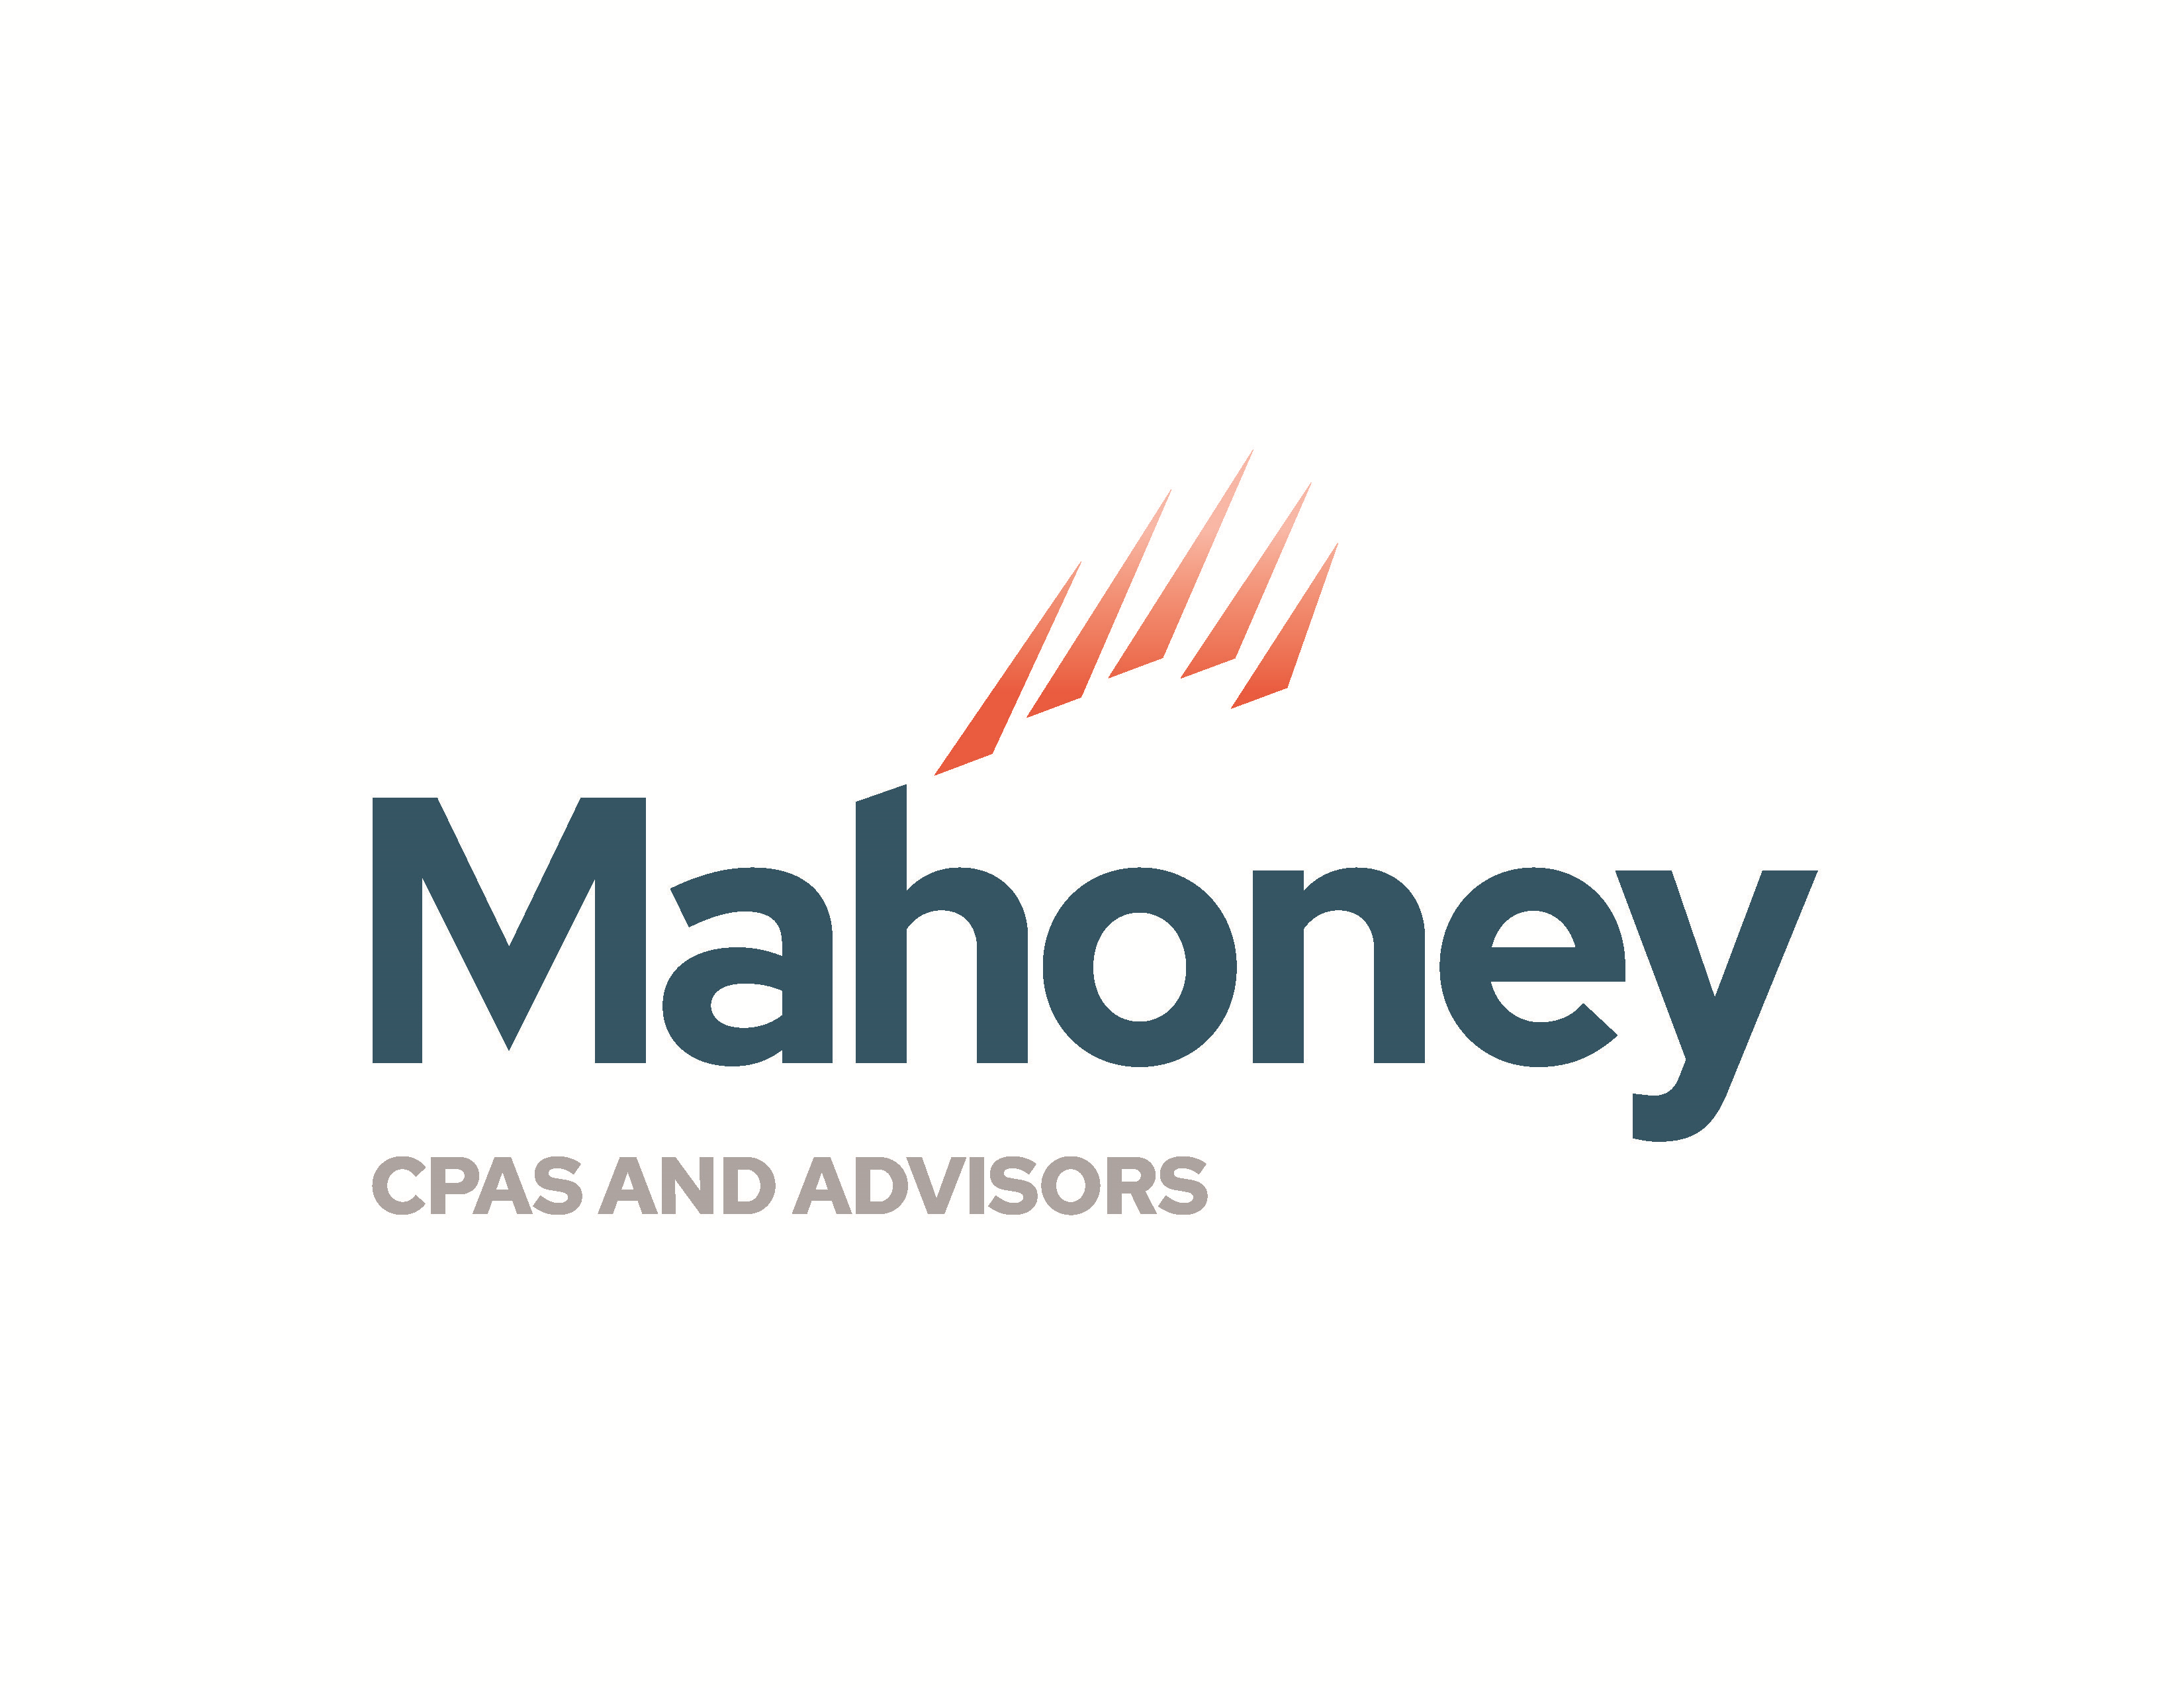 Mahoney | CPAS and Advisors Company Logo